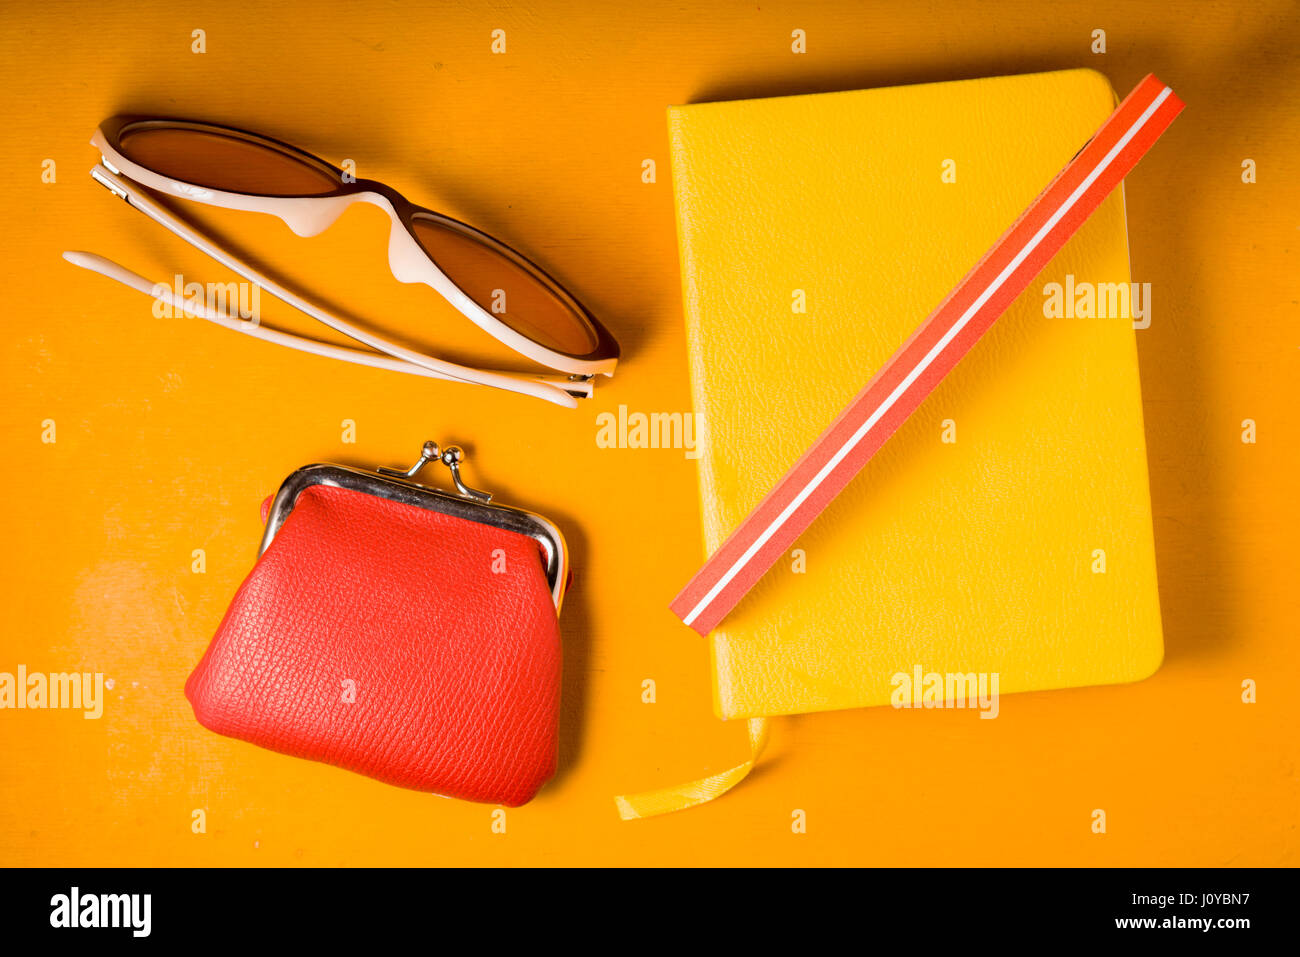 Blocco note giallo, bicchieri e portafoglio su un giallo pop art background Foto Stock